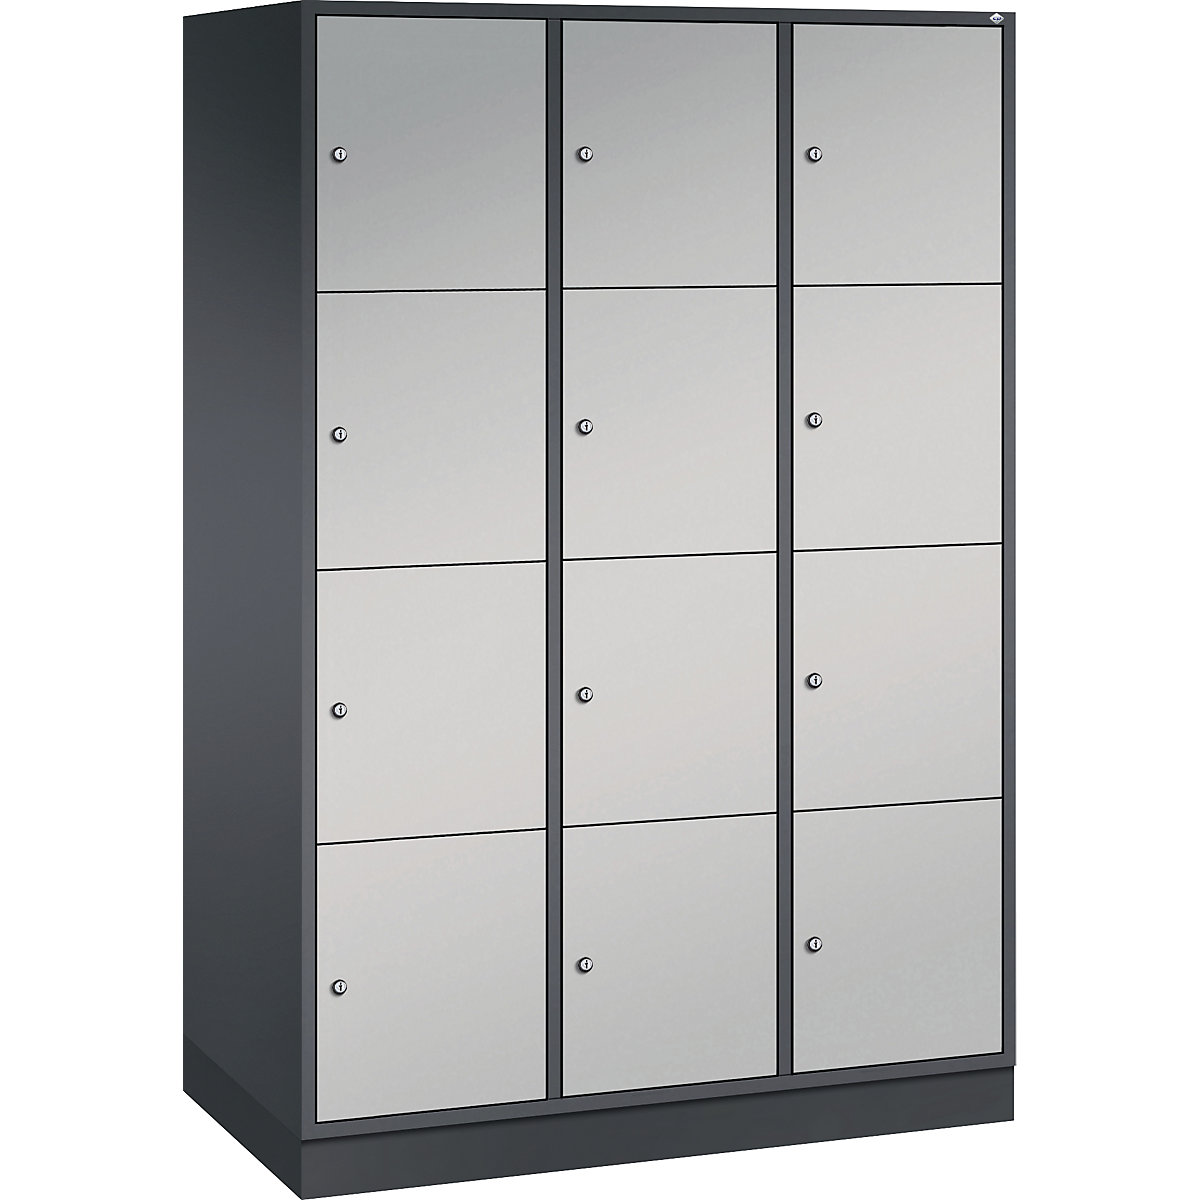 Vestiaire multicases en acier INTRO, casiers hauteur 435 mm – C+P, l x p 1220 x 600 mm, 12 casiers, corps gris noir, portes coloris aluminium-15